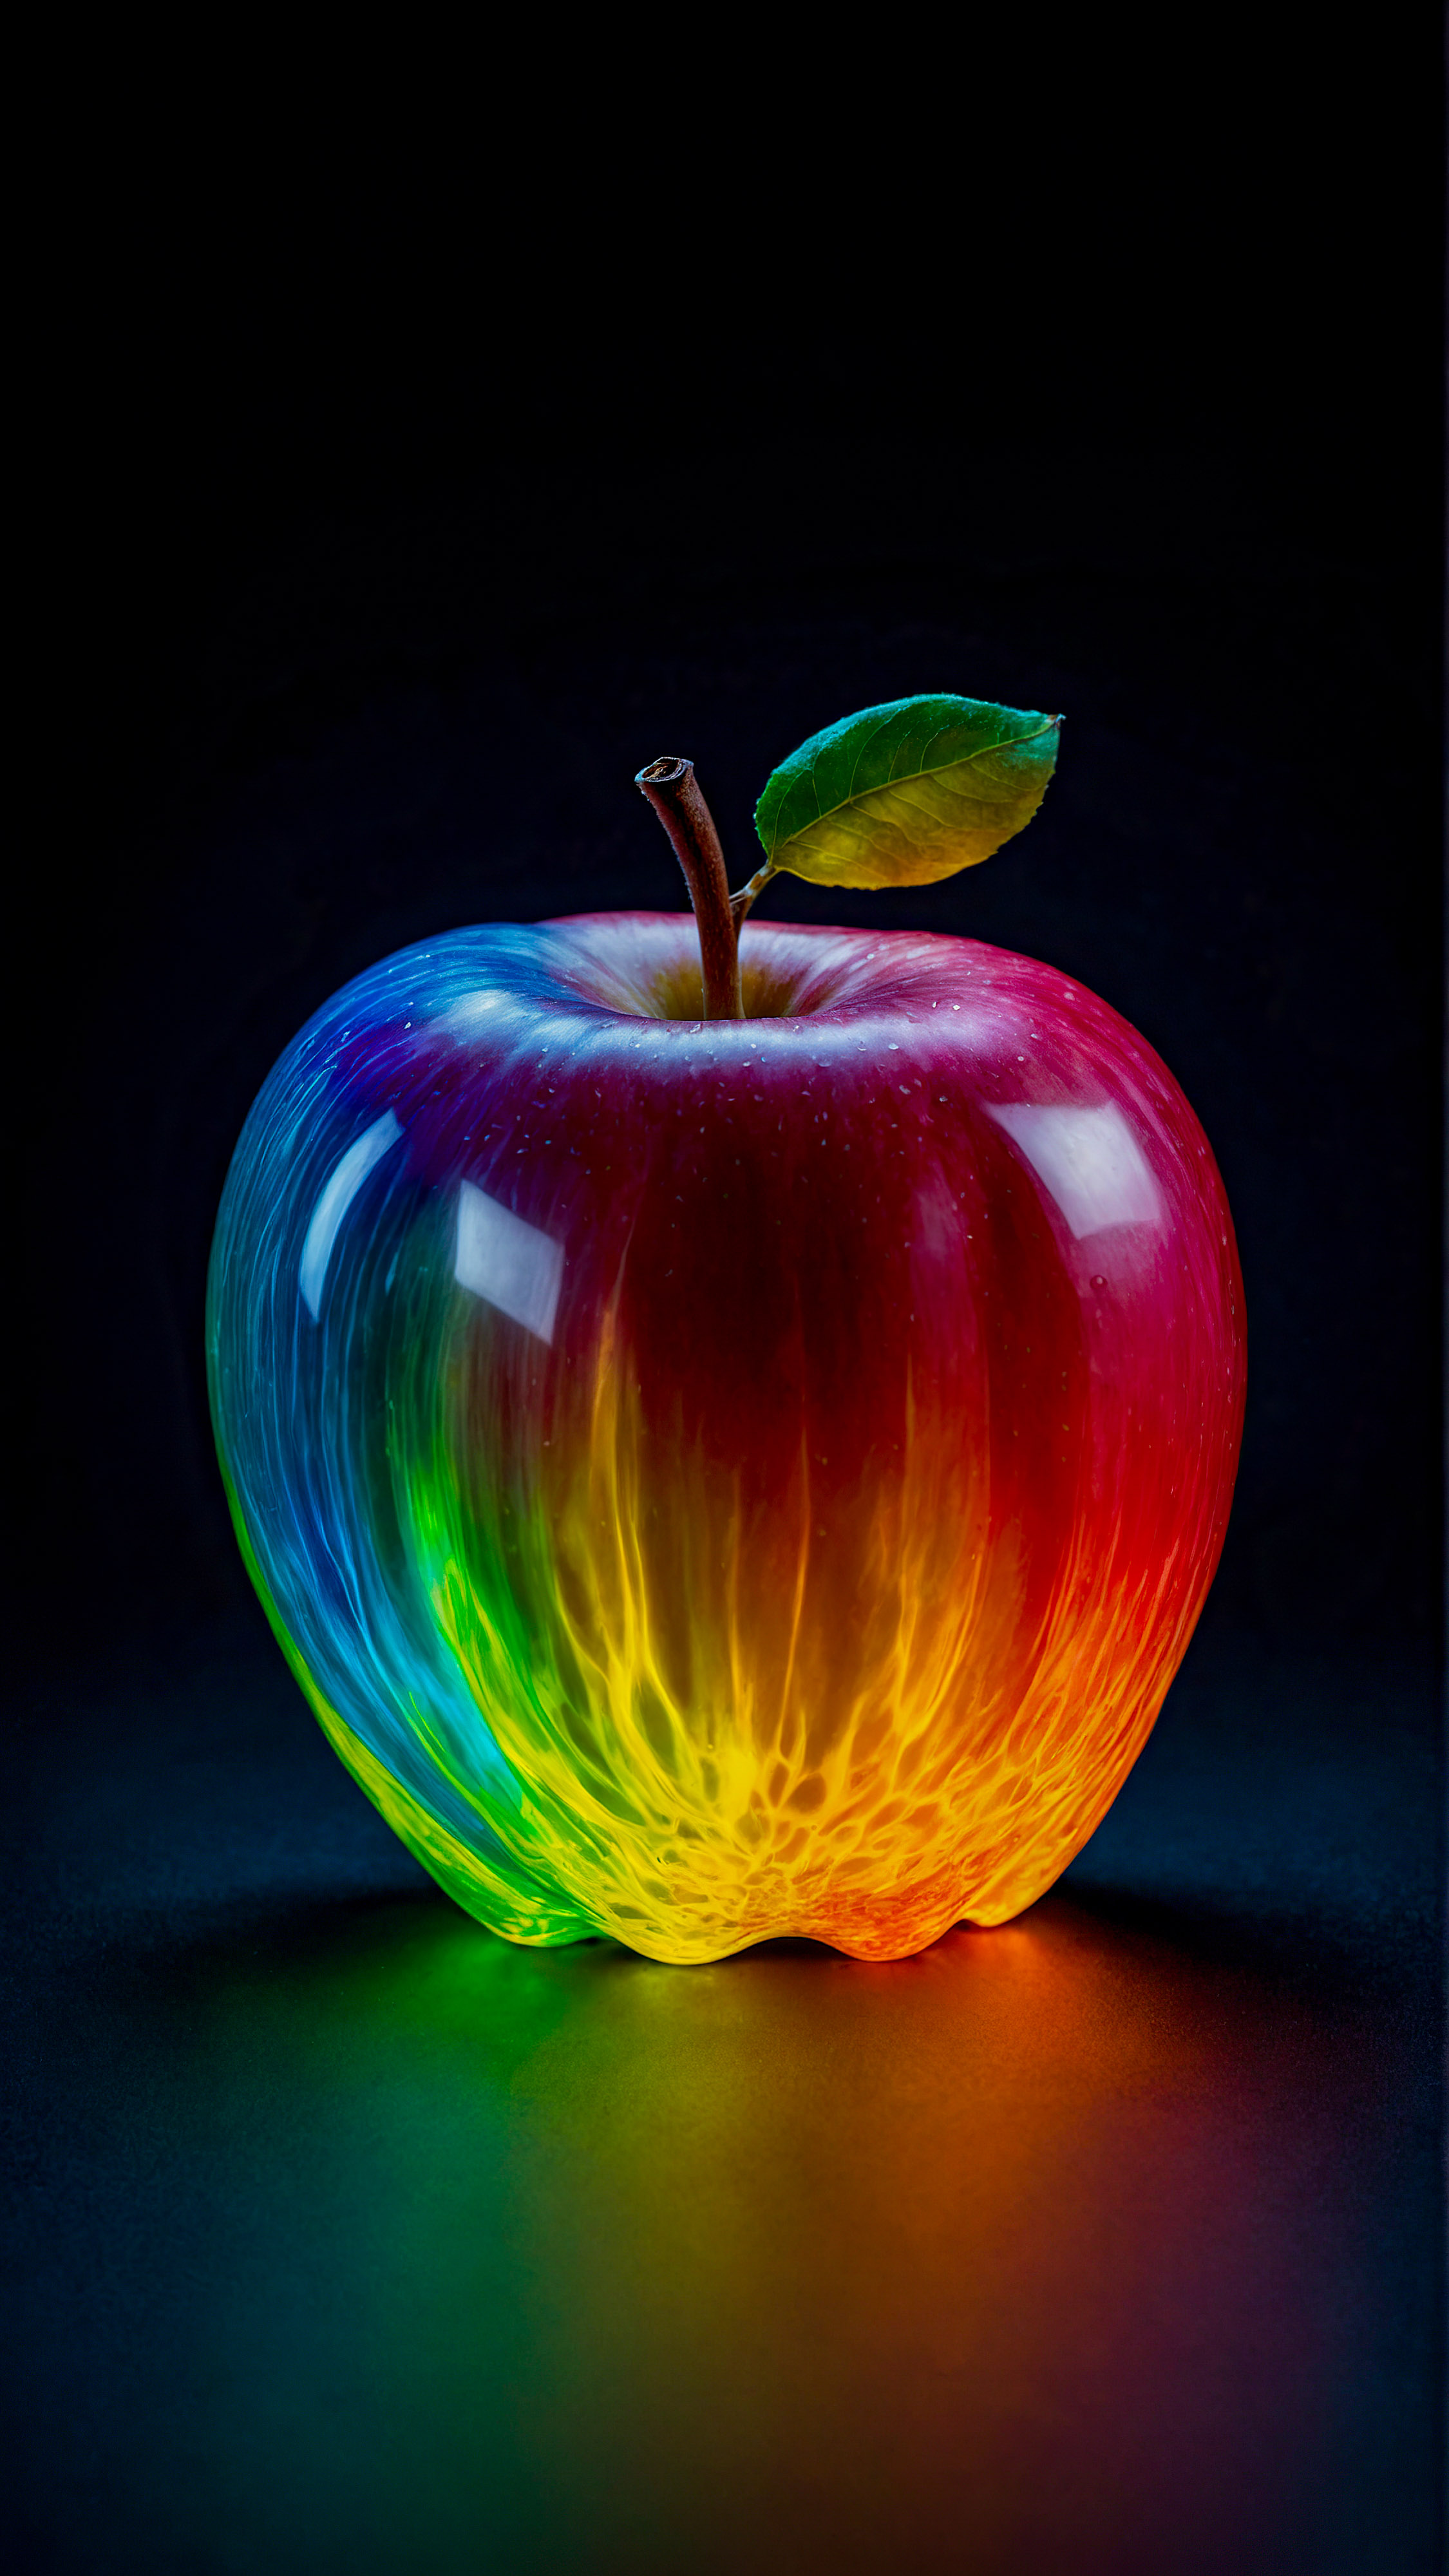 Admirez l'élégance de notre fond d'écran Apple ultra HD en 4K, présentant un logo Apple fantomatique coloré et illuminé avec un dégradé de couleurs vibrantes contre un fond sombre.